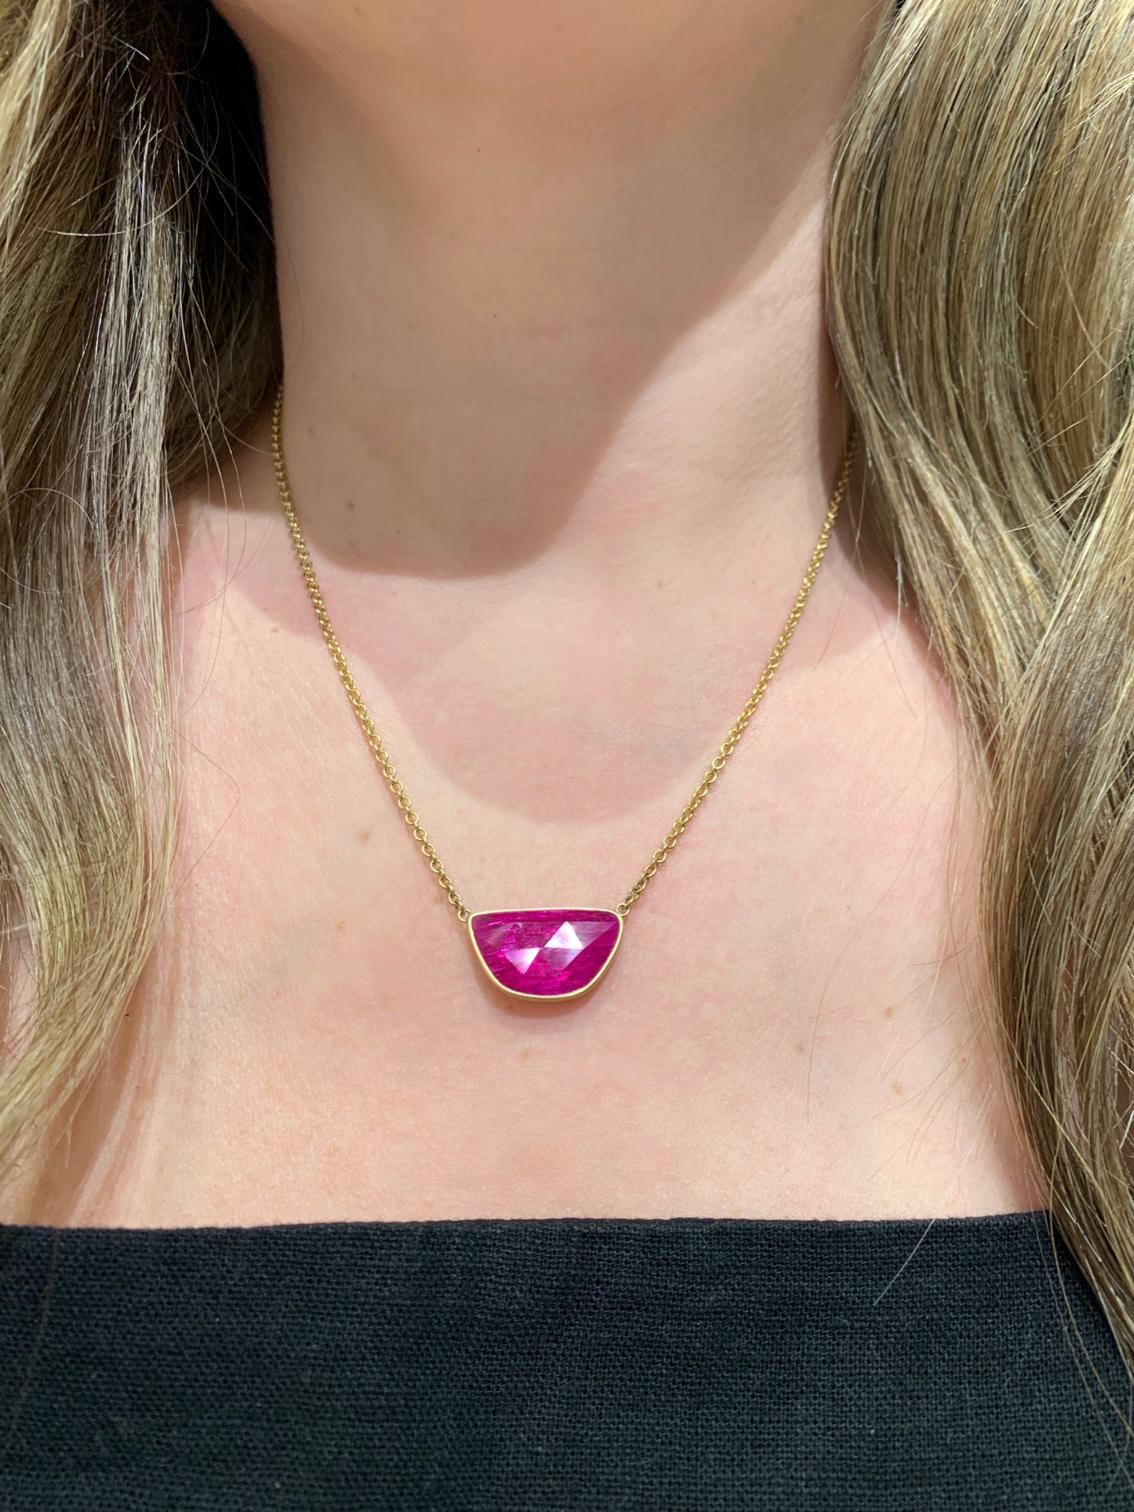 Einzigartige Halskette, handgefertigt von der Schmuckherstellerin Lola Brooks, mit einem schimmernden, rosafarbenen, facettierten Rubin von insgesamt 6,87 Karat, eingefasst in 18-karätigem Gelbgold und an einer 18-Zoll-Kette aus 18-karätigem